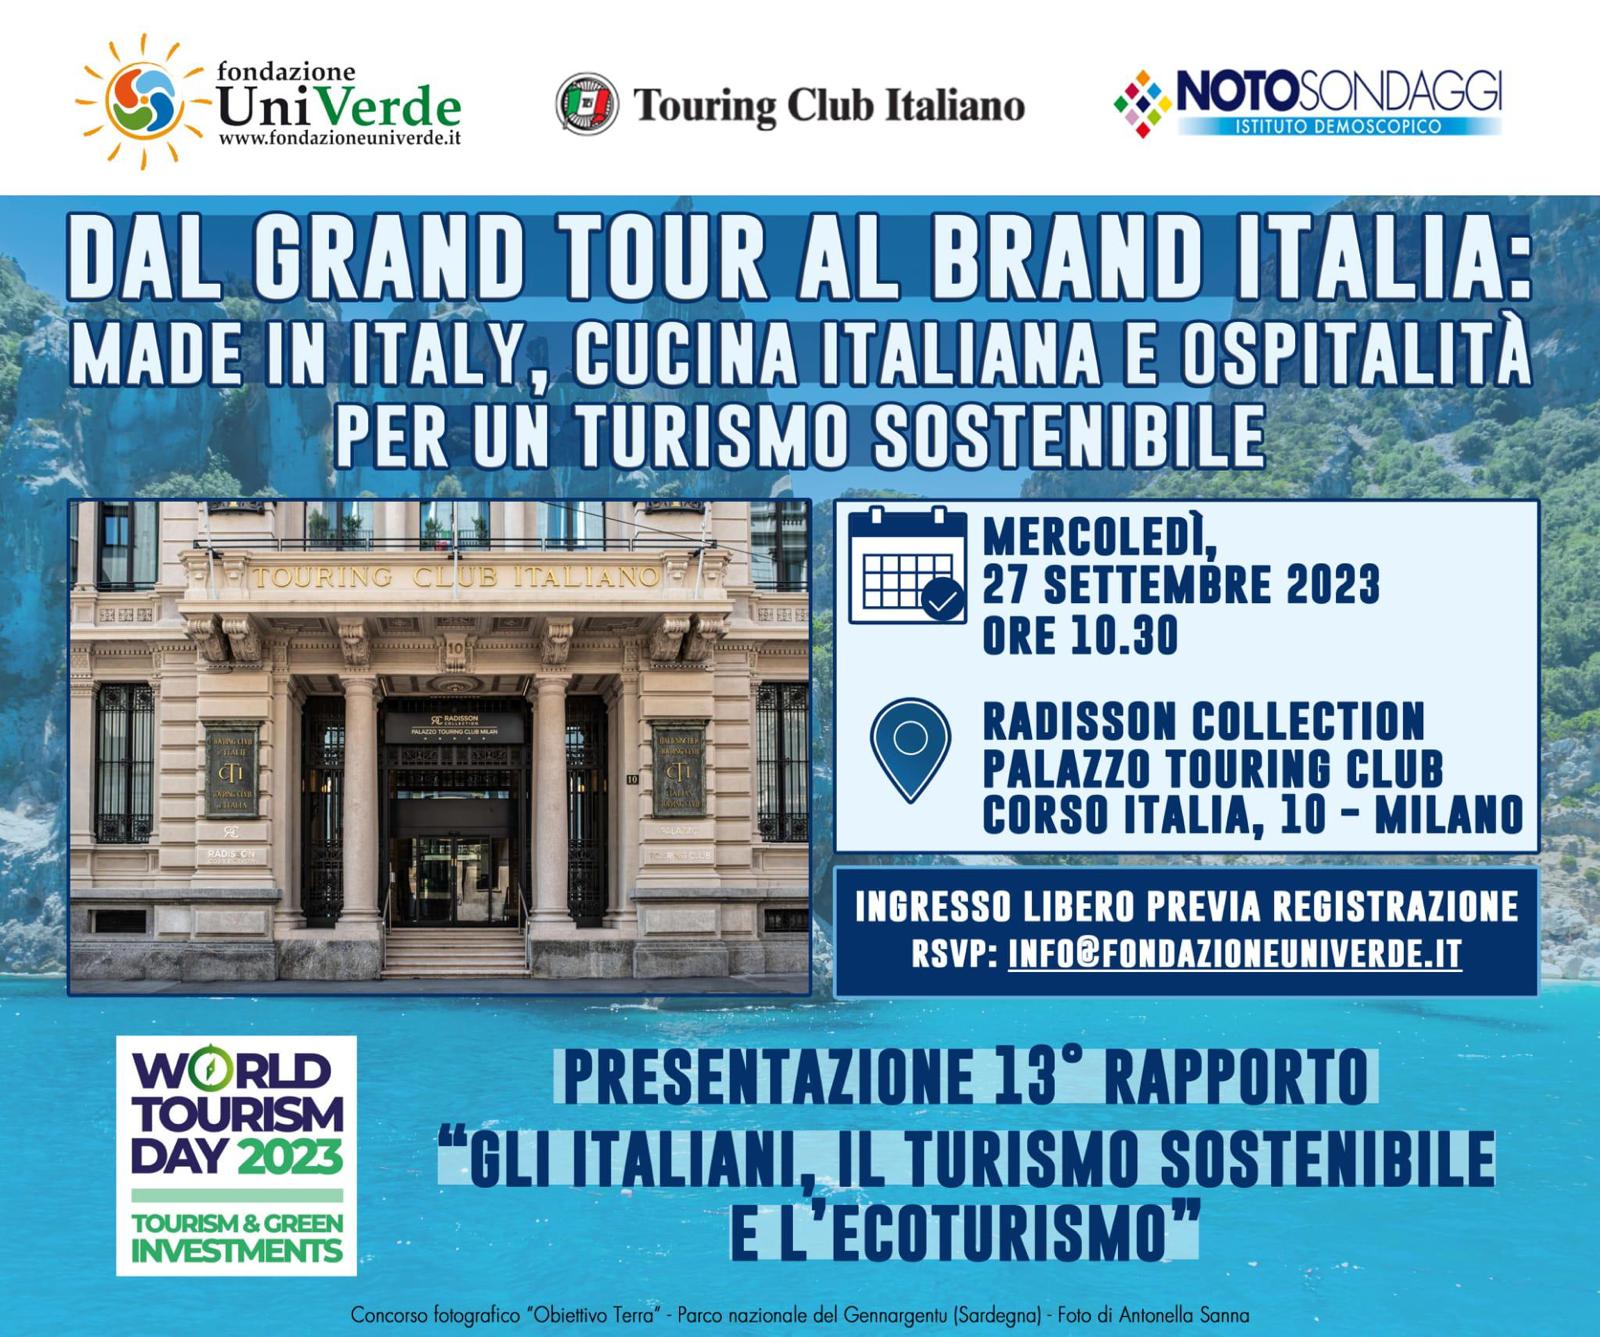 Attachment Dal Gran Tour al brand Italia.jpg